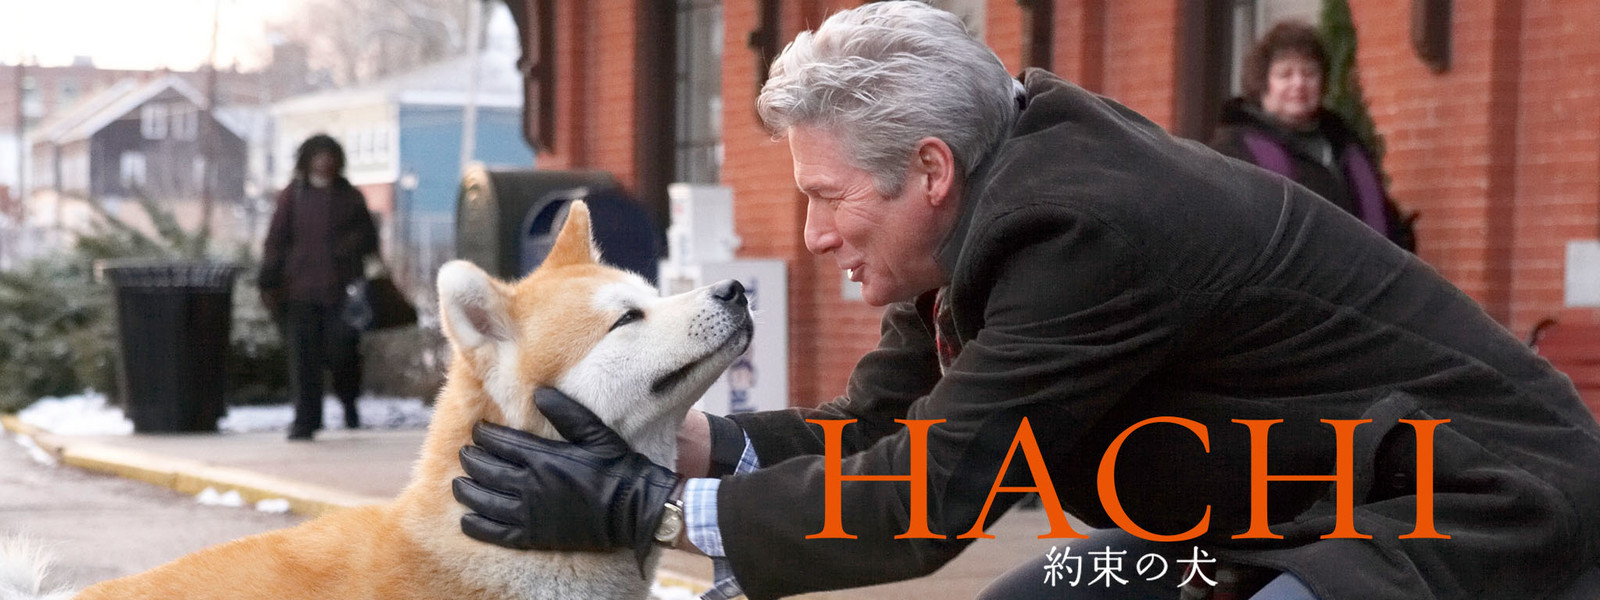 映画 Hachi 約束の犬 評価 感想 レビューまとめ 和黒柴な日々